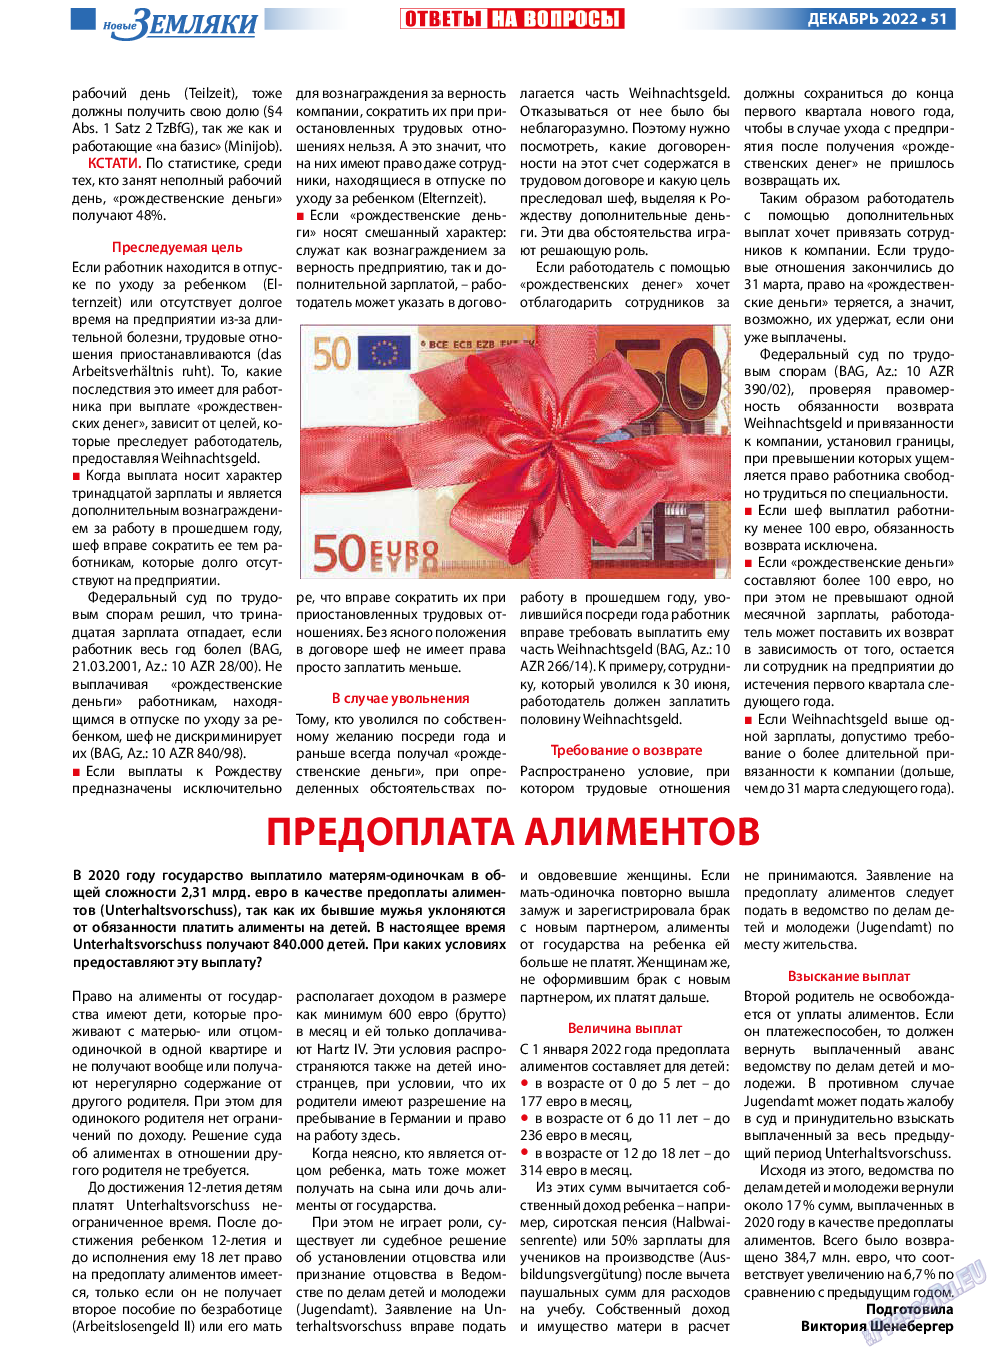 Новые Земляки, газета. 2022 №12 стр.51